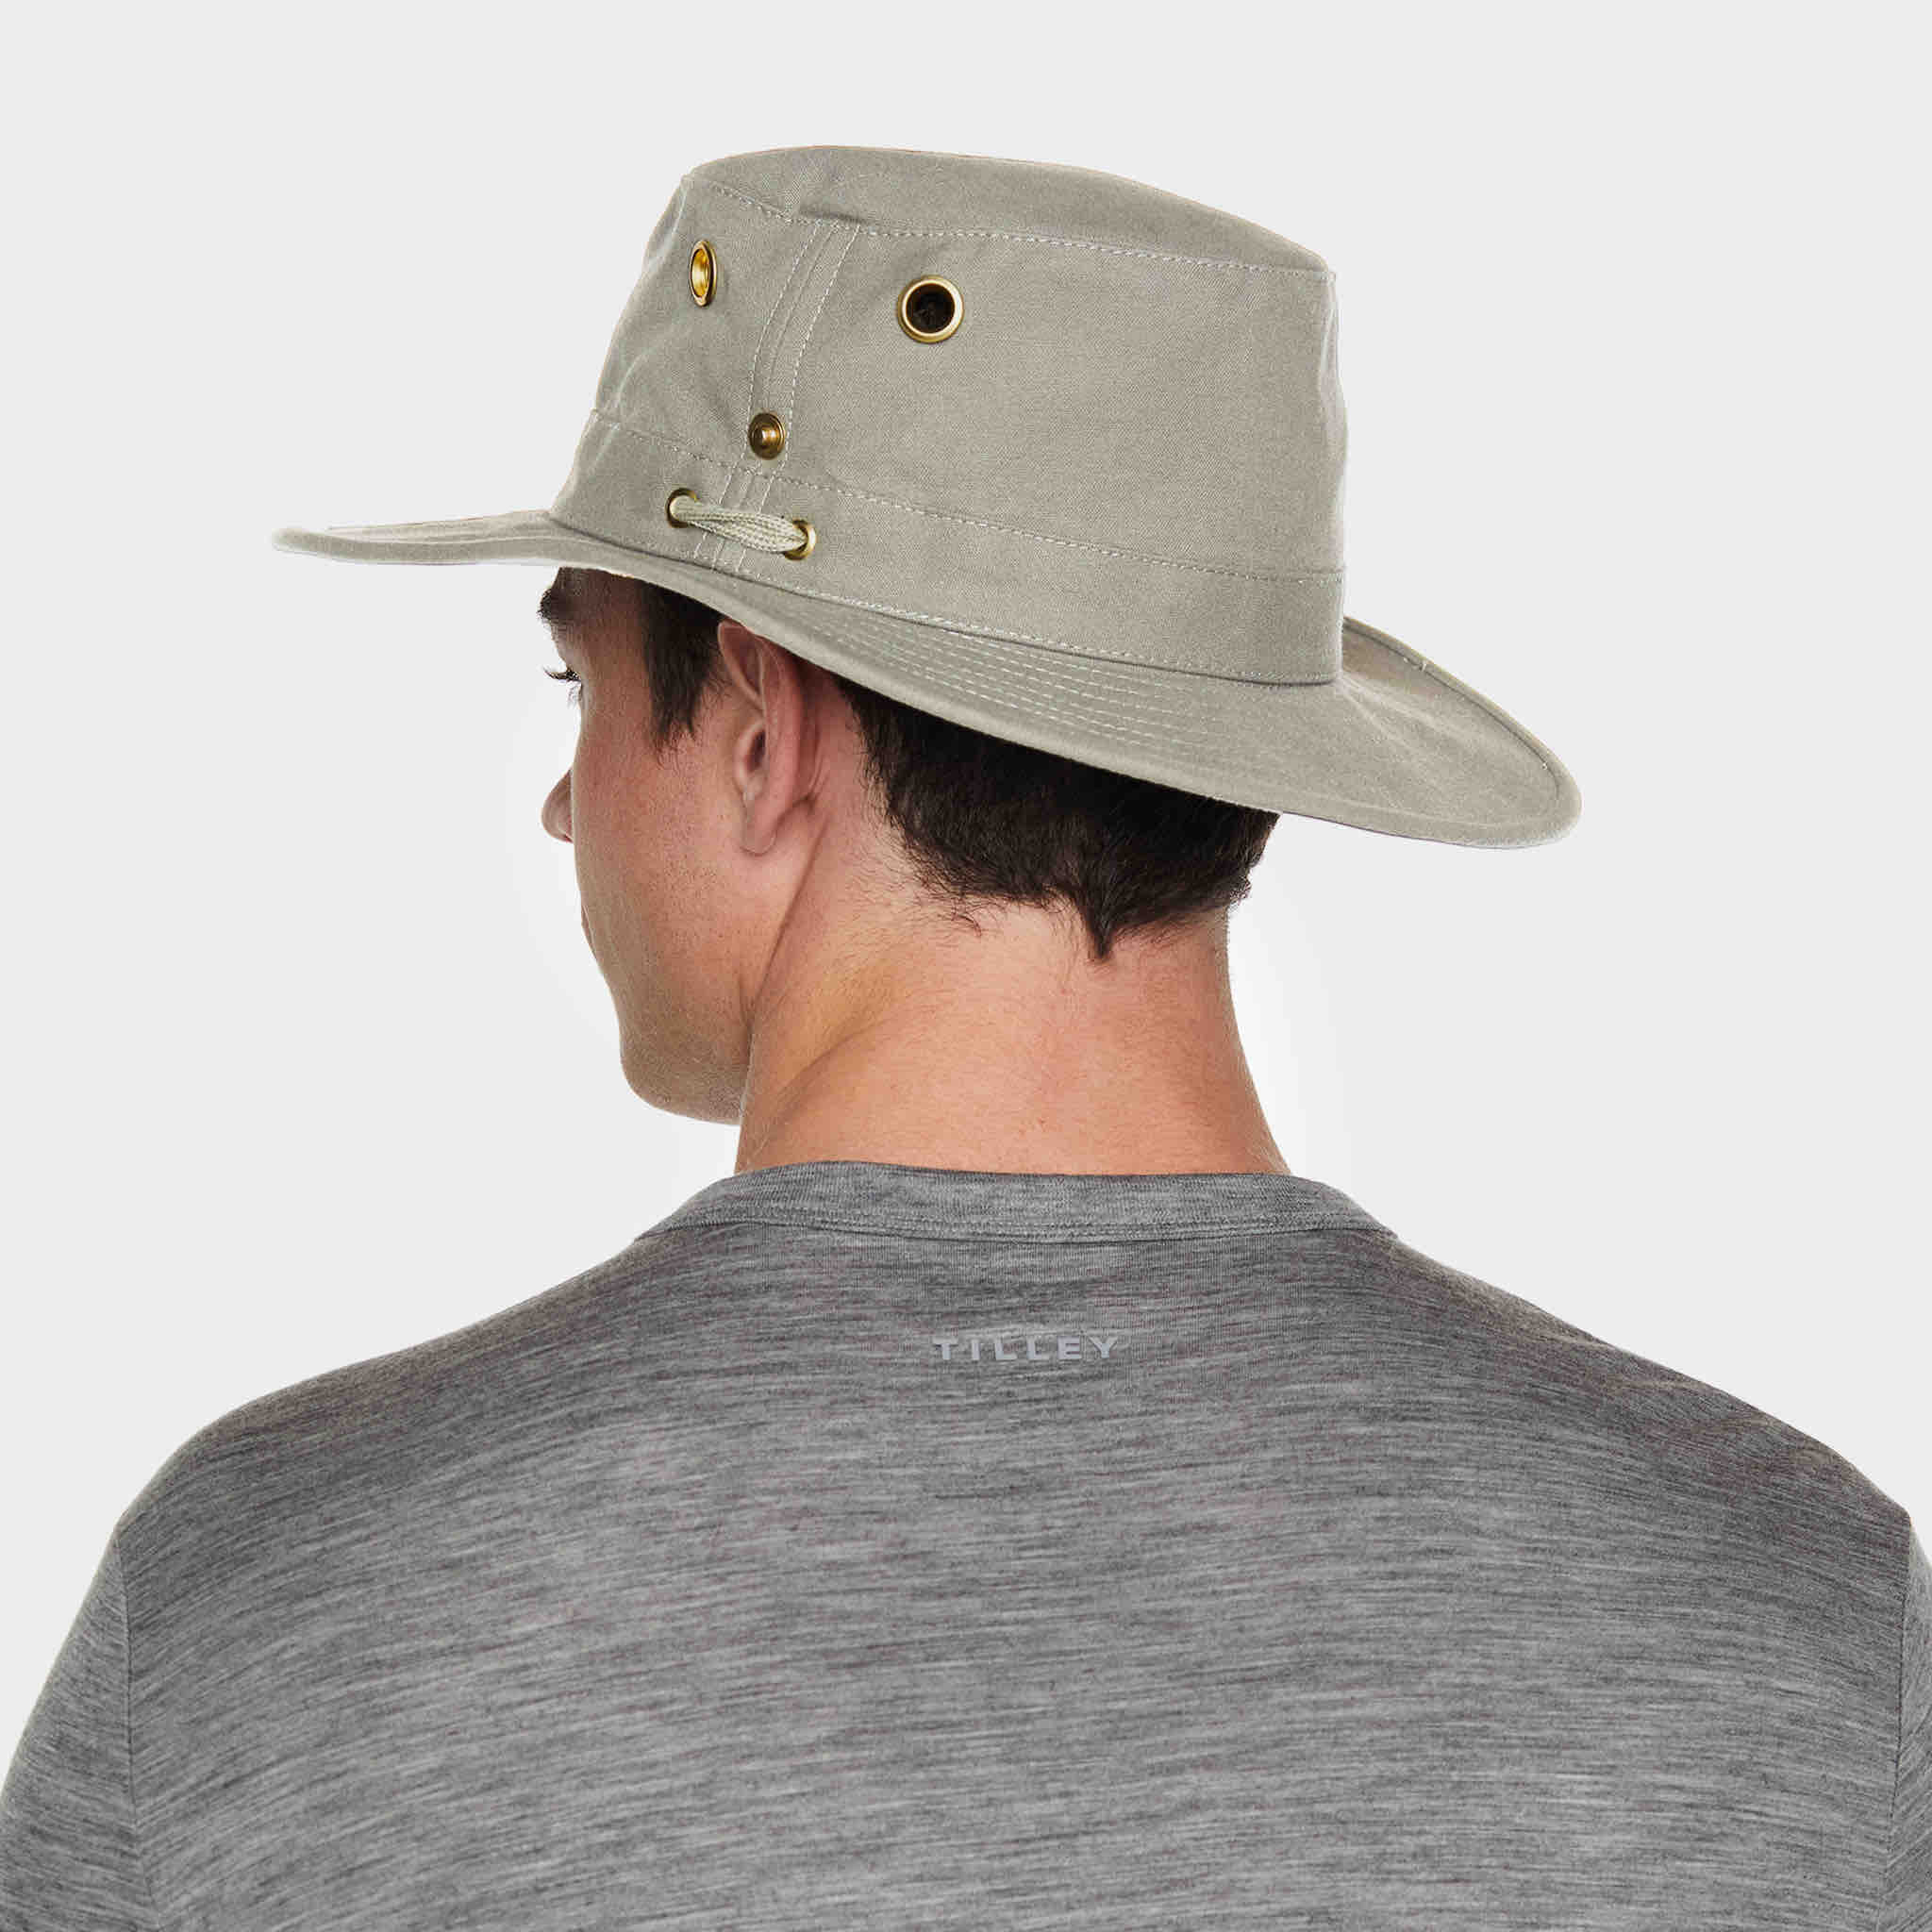 Golf Bucket Hat TILLEY Adjustable, Fast Shipping